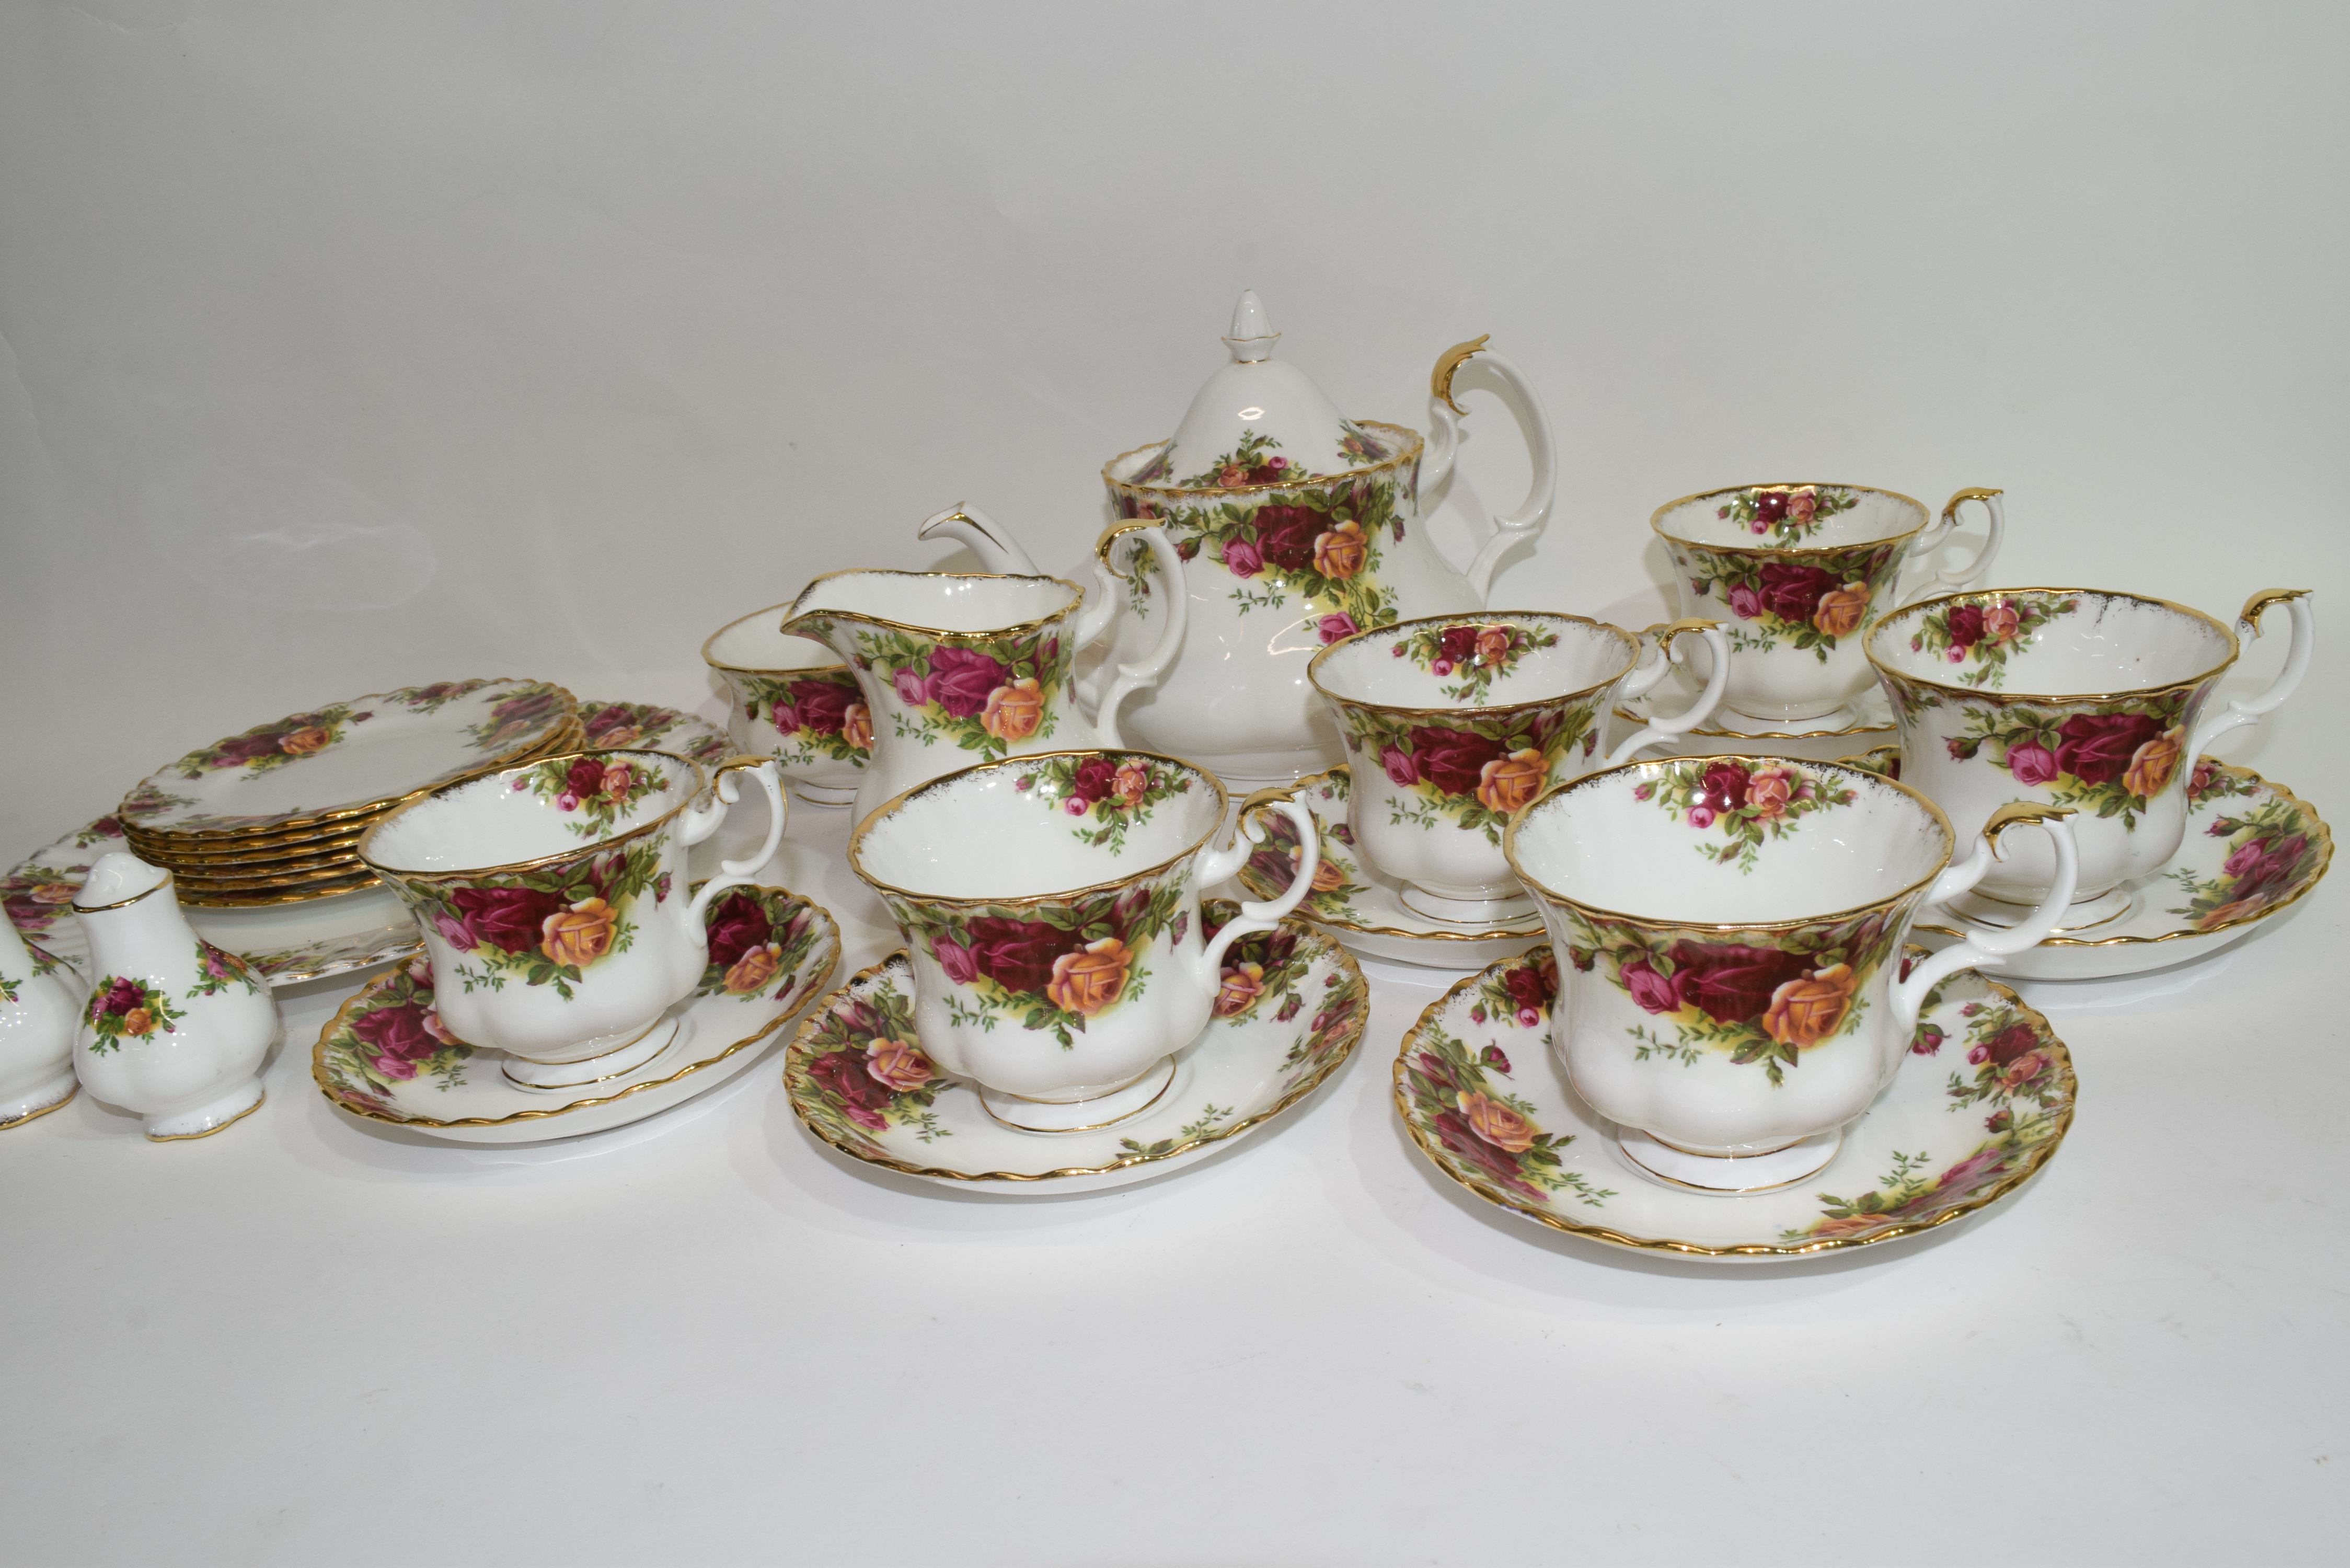 Royal Albert tea set in the Old Country Roses pattern comprising tea pot, milk jug, sugar bowl, - Image 2 of 2